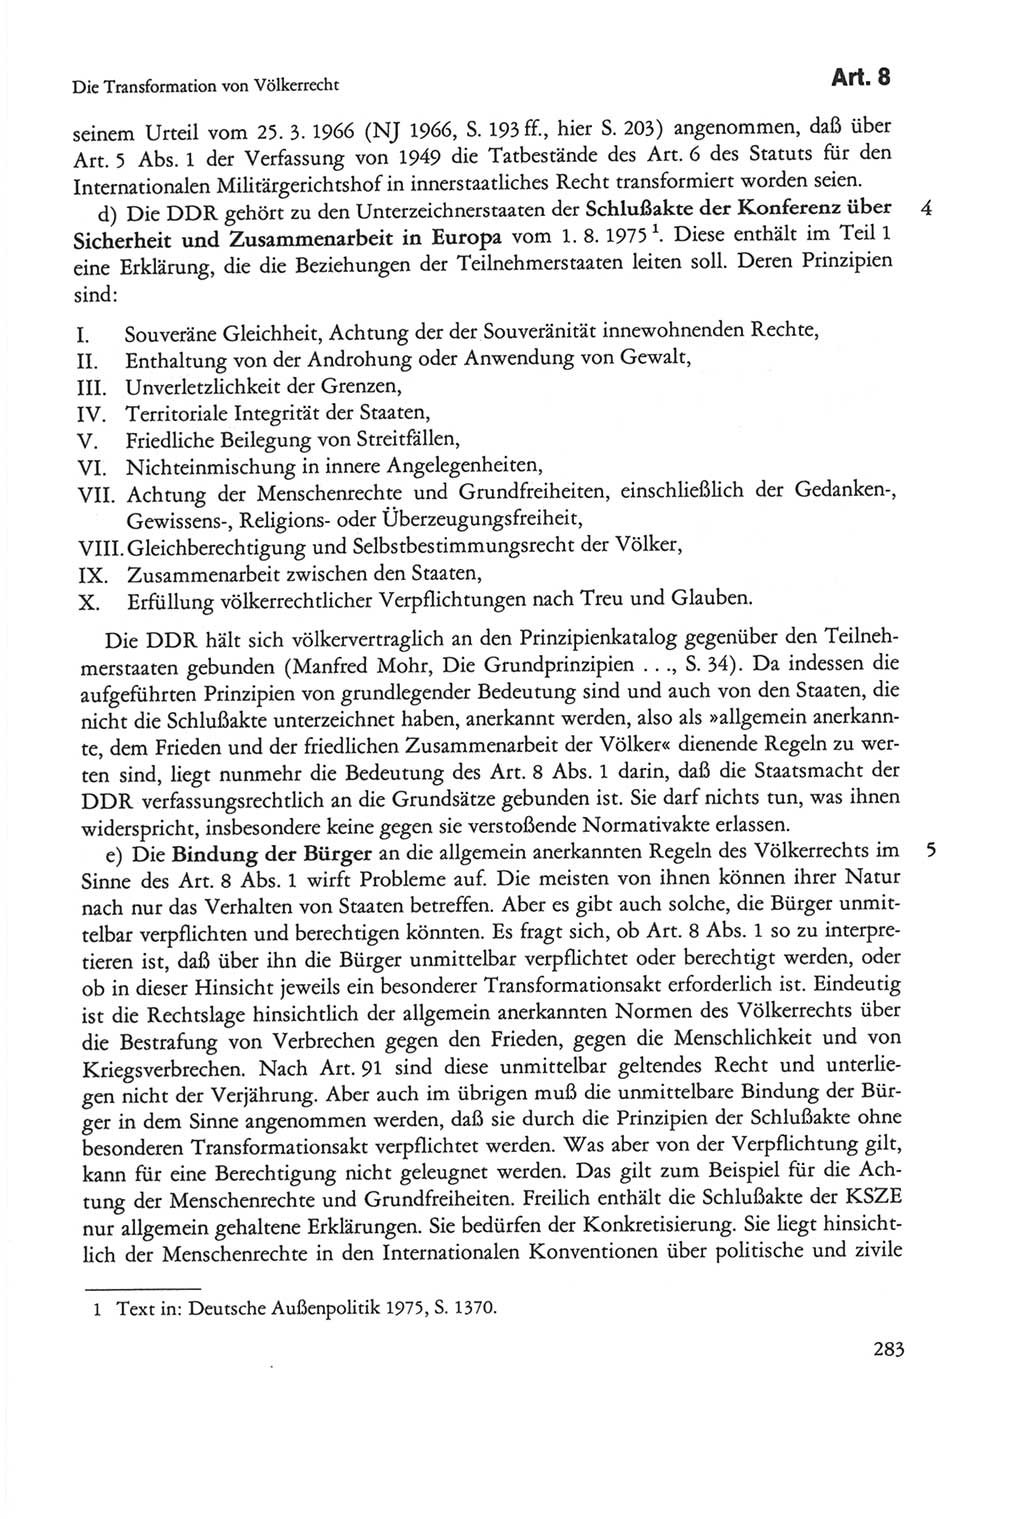 Die sozialistische Verfassung der Deutschen Demokratischen Republik (DDR), Kommentar 1982, Seite 283 (Soz. Verf. DDR Komm. 1982, S. 283)